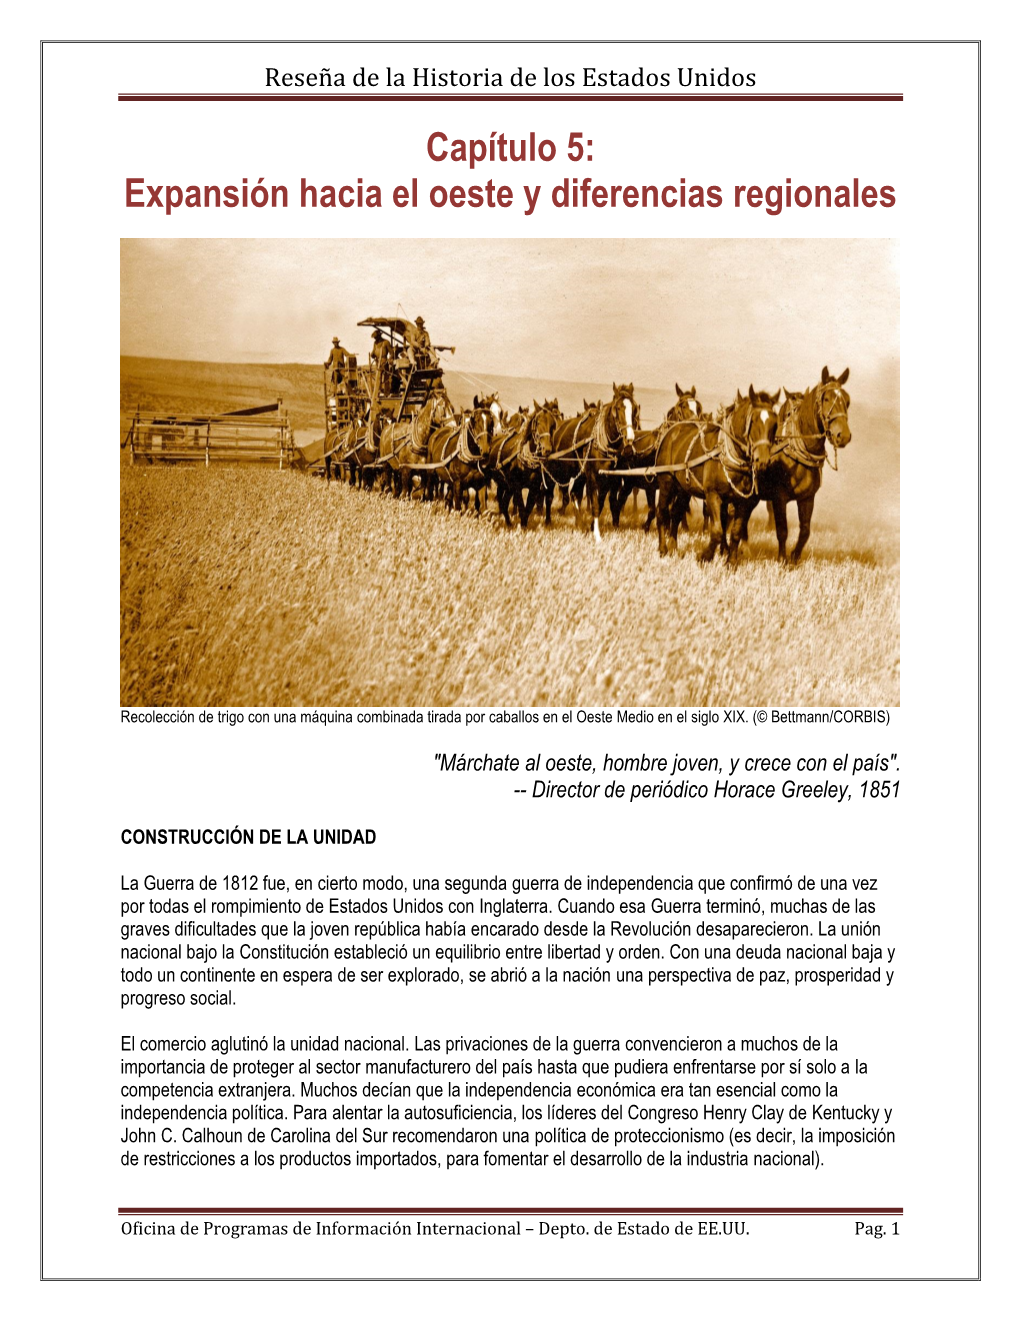 Capítulo 5: Expansión Hacia El Oeste Y Diferencias Regionales